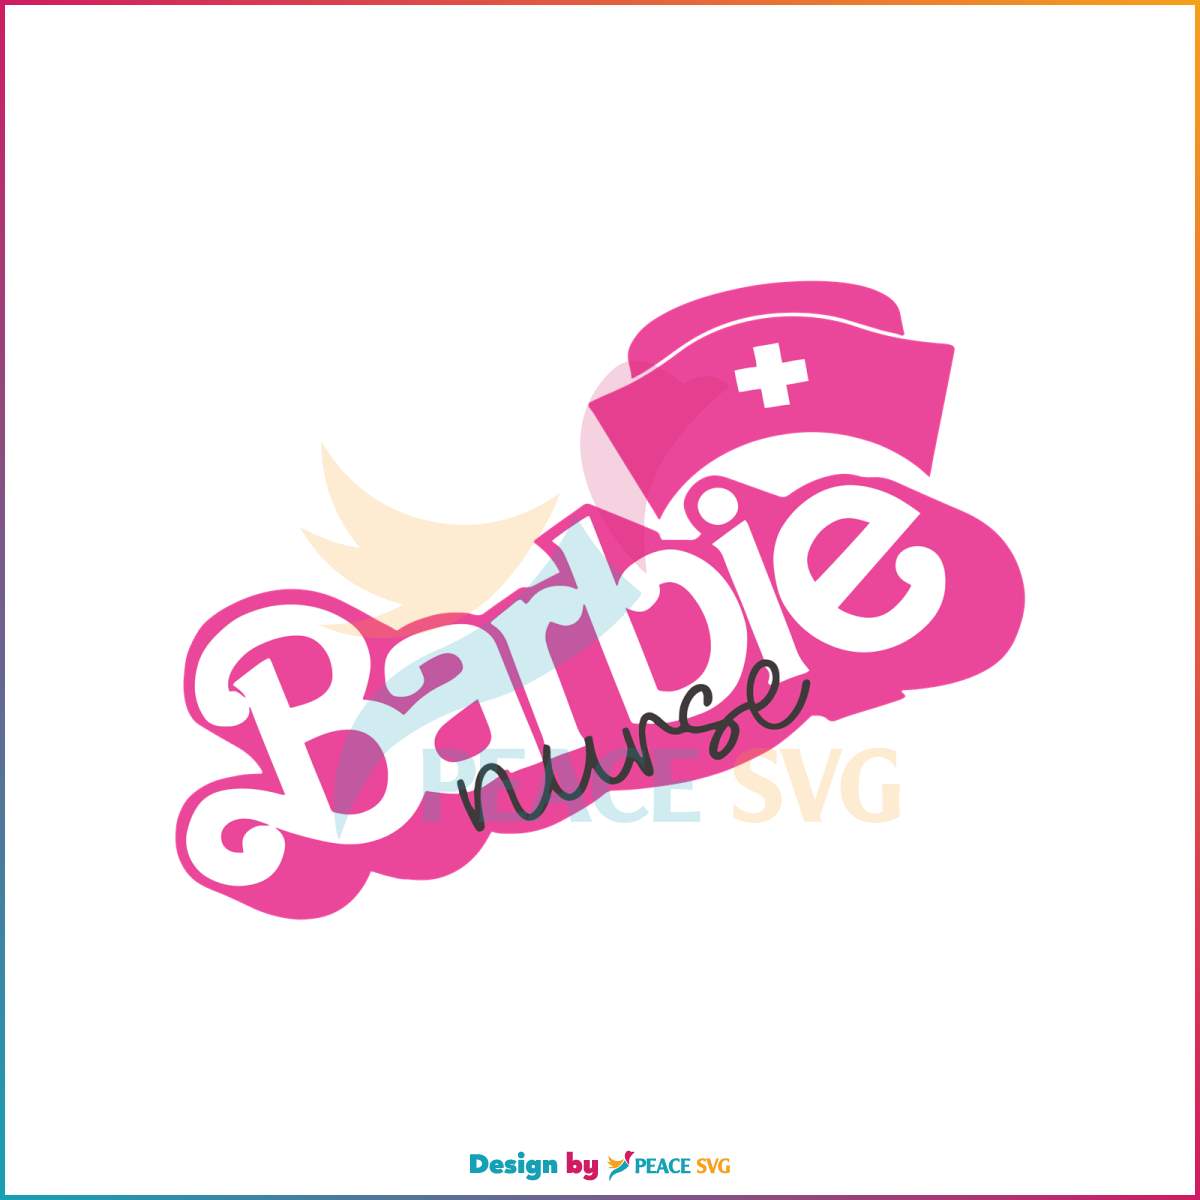 nurse-doll-funny-barbie-nurse-svg-graphic-design-file